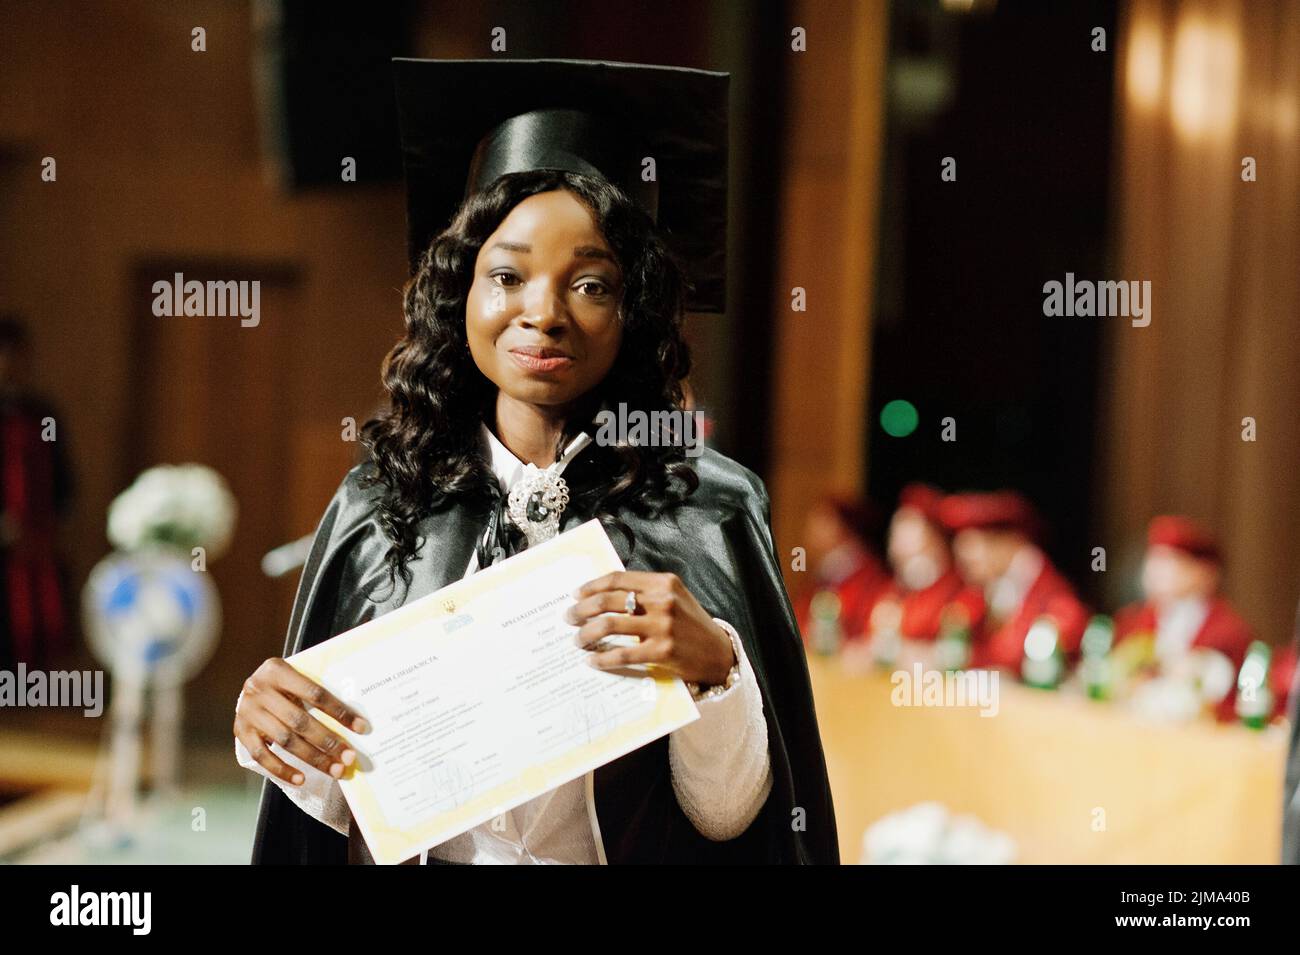 Glückliches schönes schwarze afroamerikanische Mädchen mit Hut und Mantel Absolventen bei Zeremonie Studium mit Diplom bei der hand Stockfoto